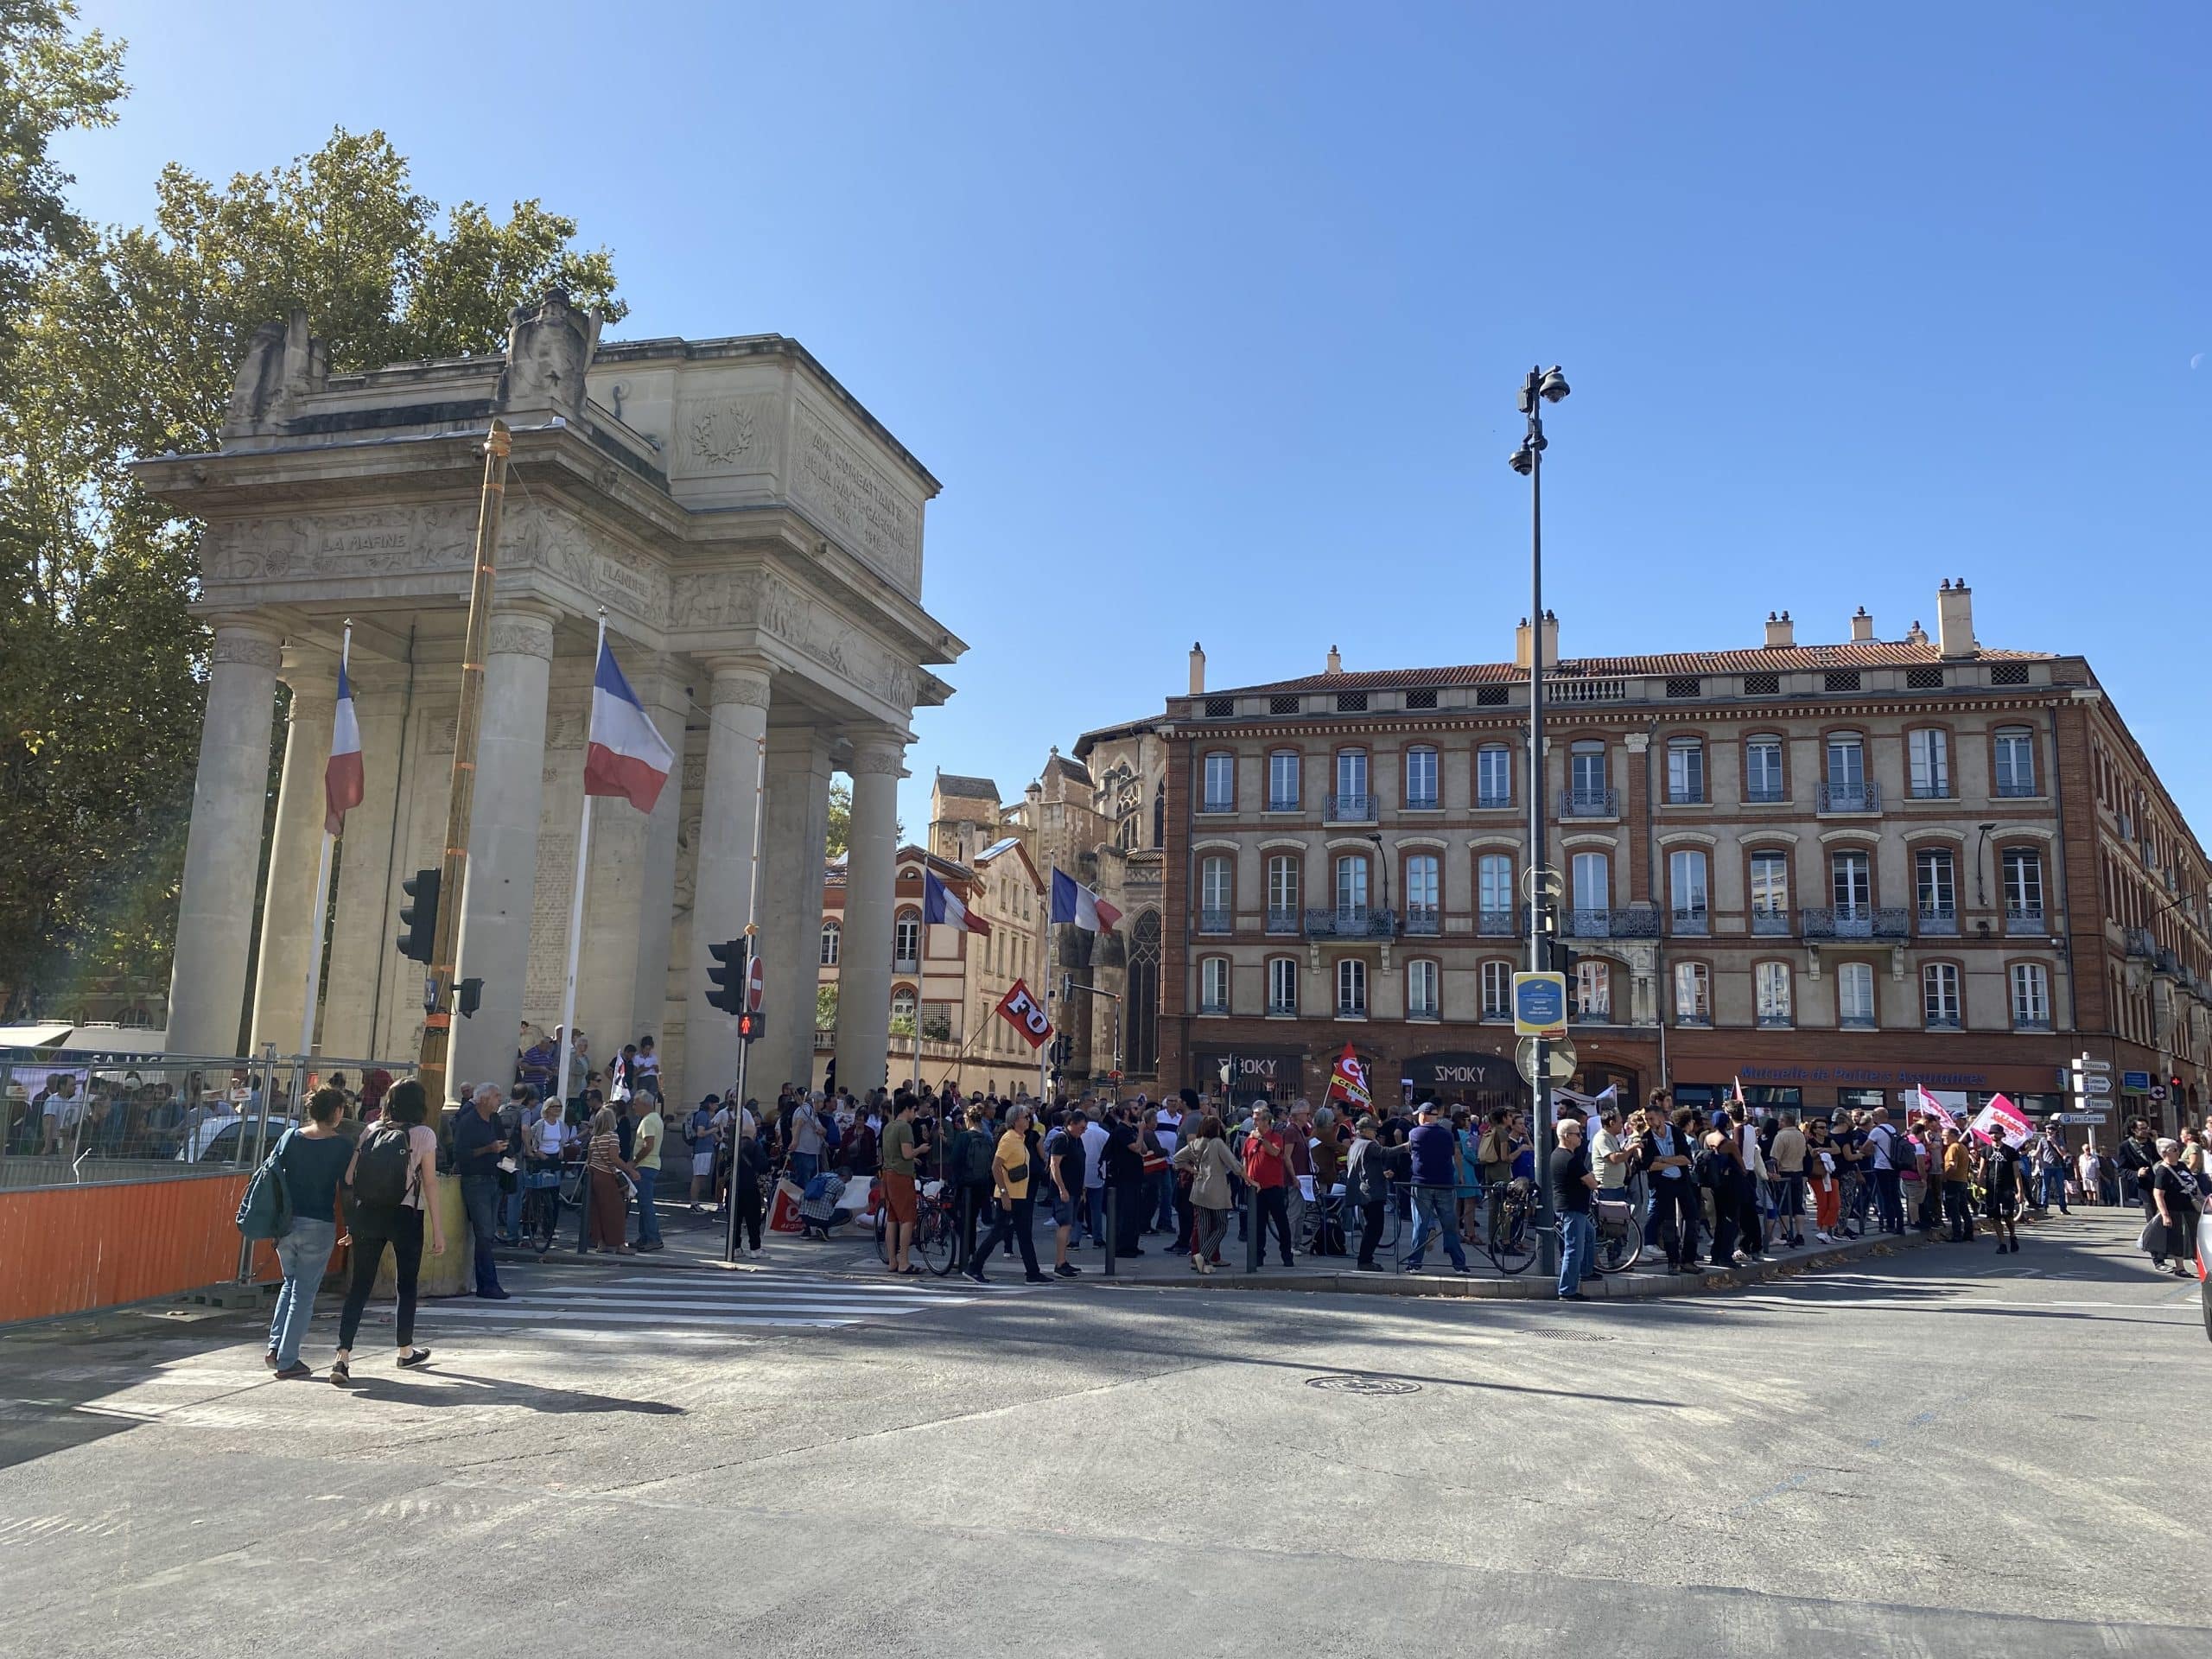 grève Toulouse